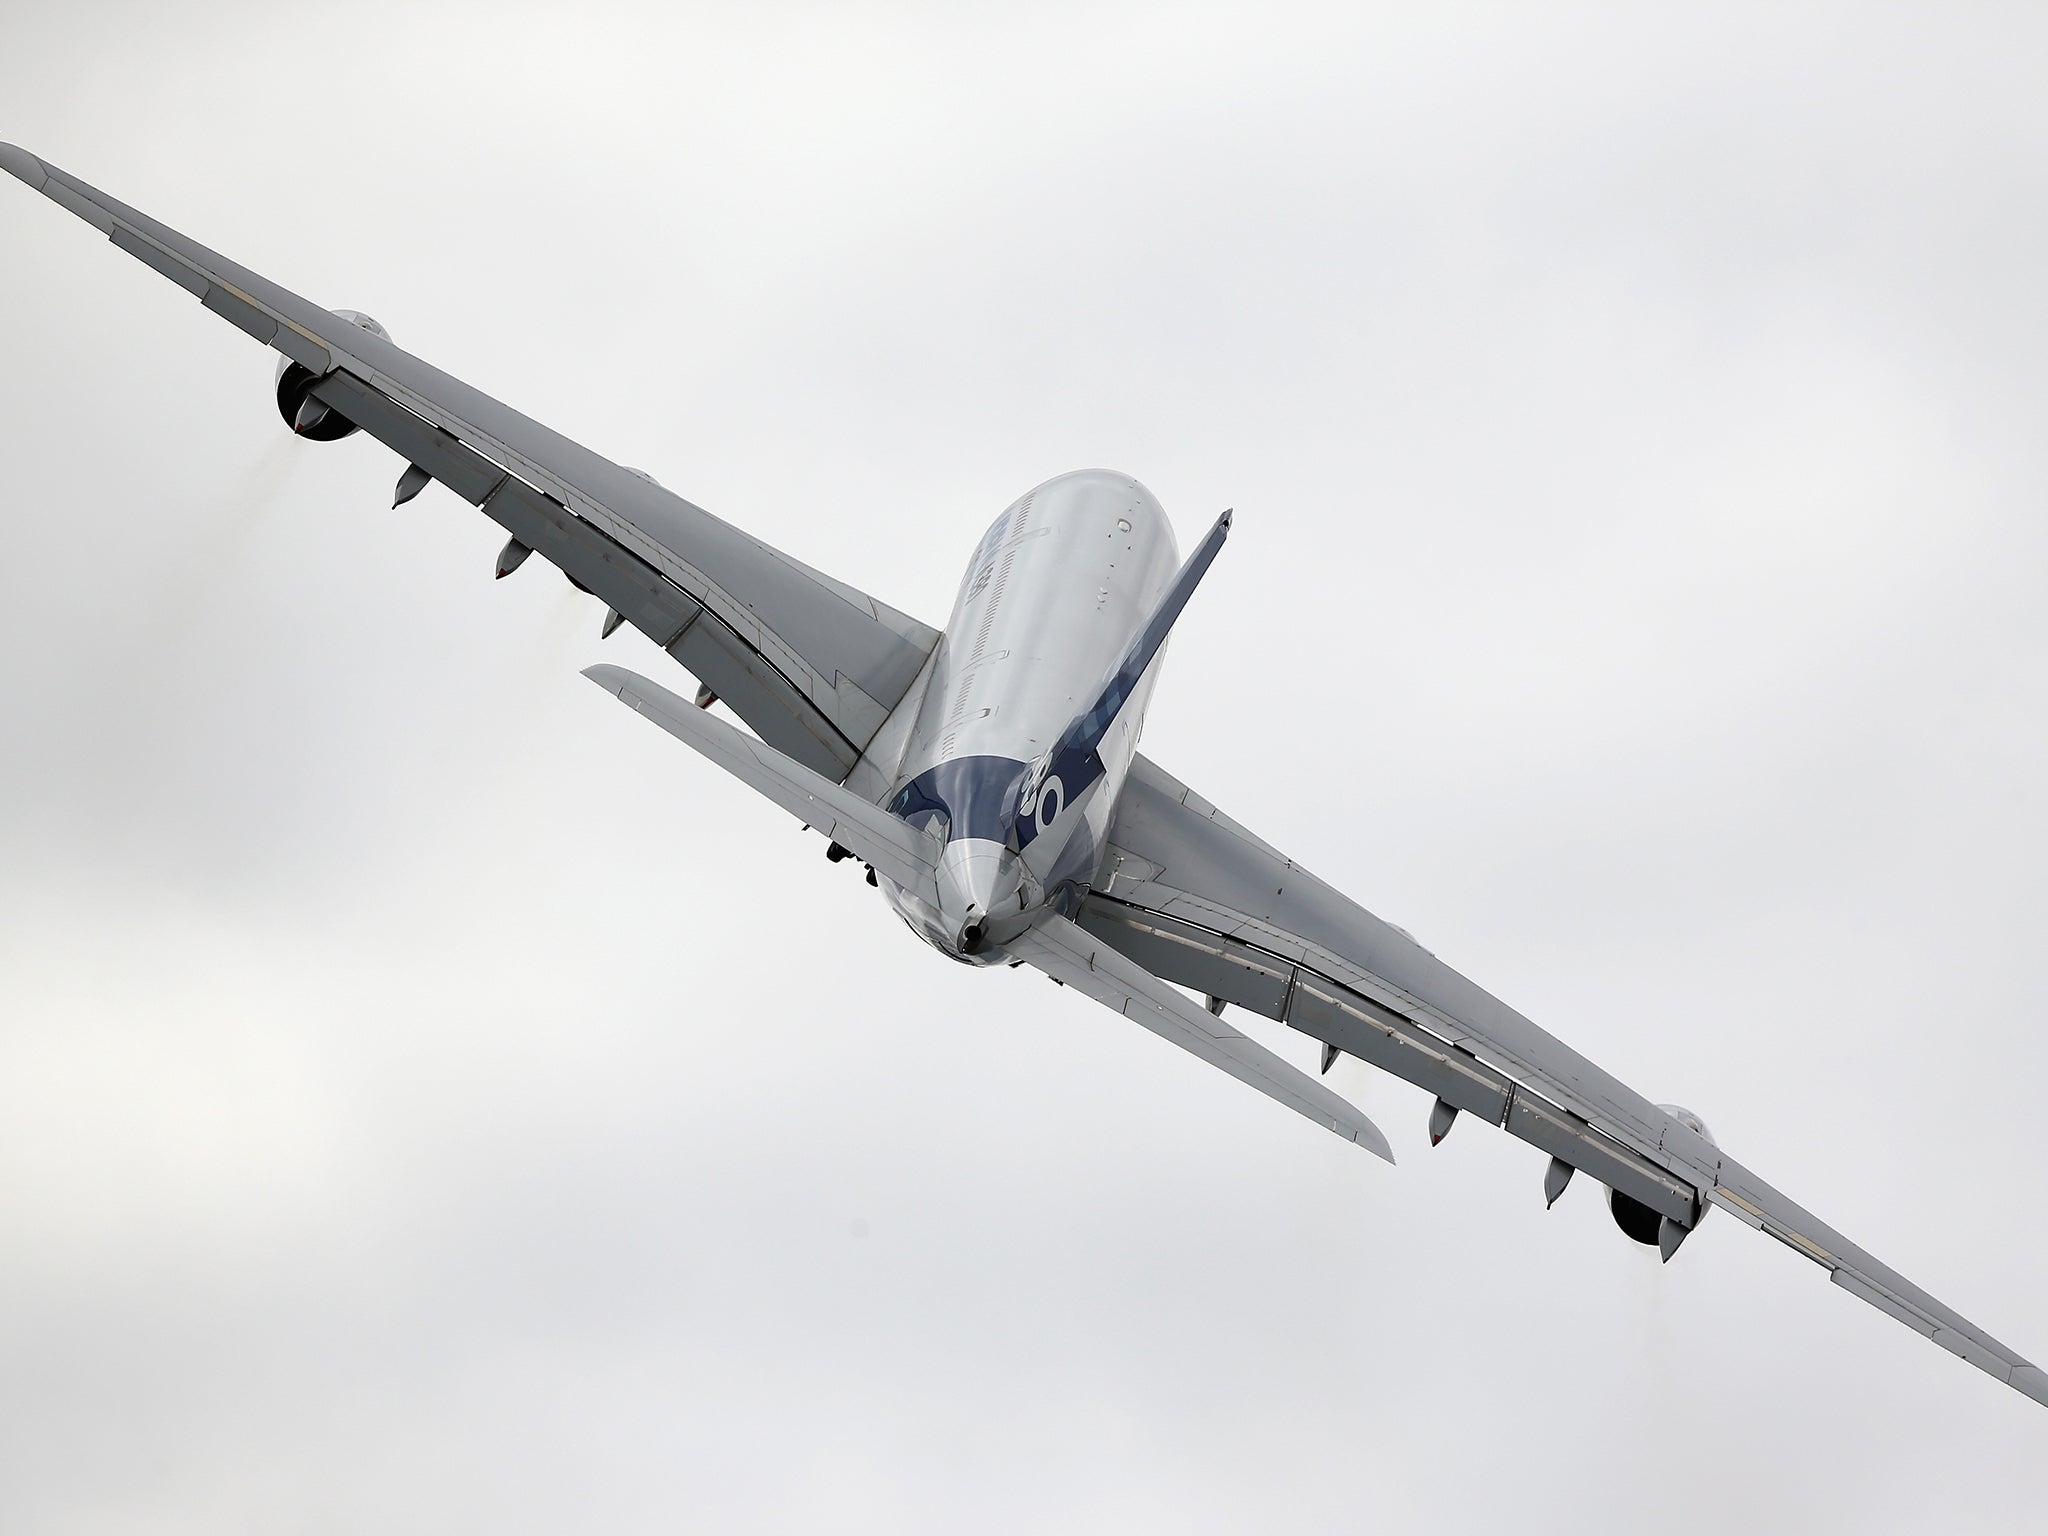 The Airbus A380 passenger jet has a carbon fibre reinforced plastic fuselage for a lower fuel consumption